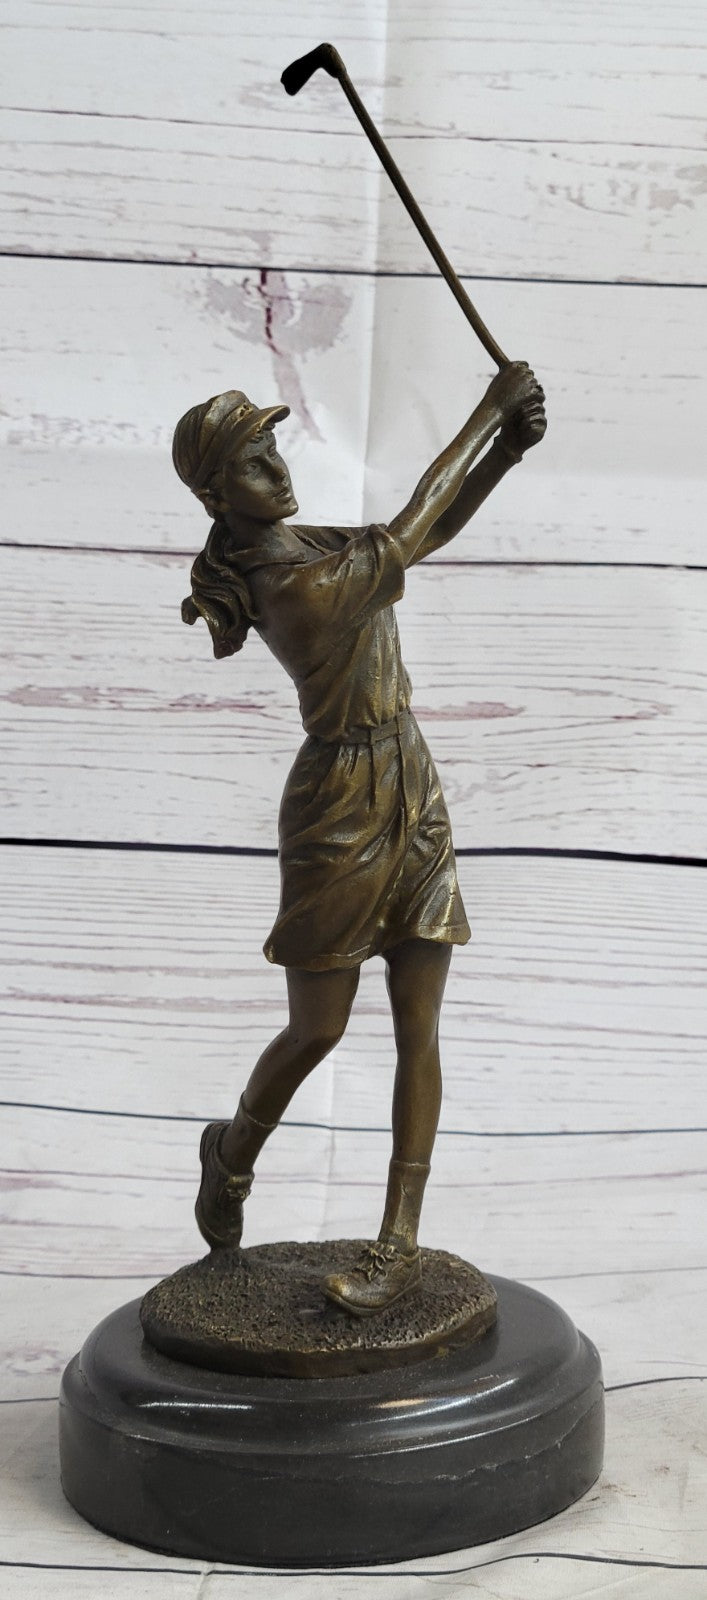 Hand Made Collector Edition Woman Girl Golfer Golf Trophy Bronze Sculpture Statu